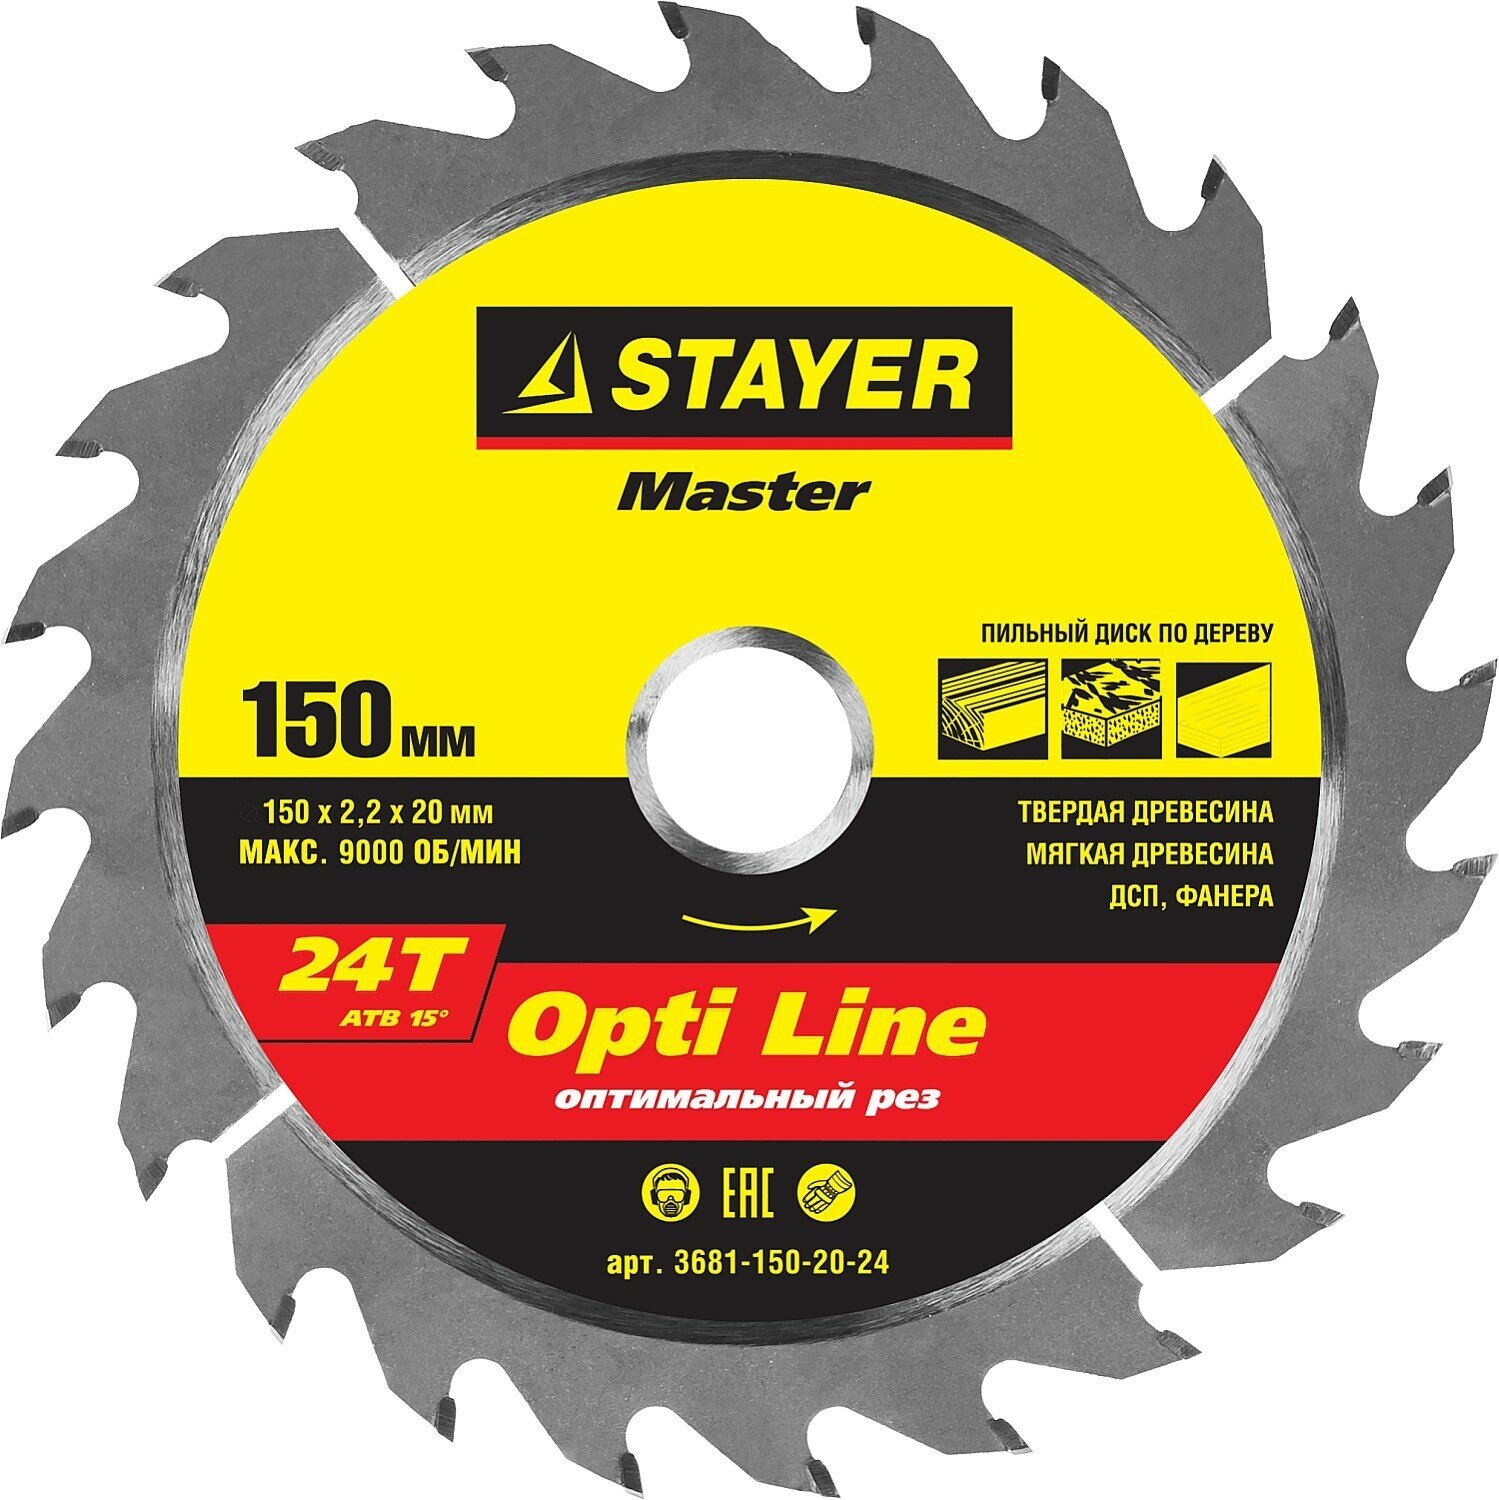 STAYER Opti Line, 150 x 20/16 мм, 24T, оптимальный рез, пильный диск по дереву (3681-150-20-24)